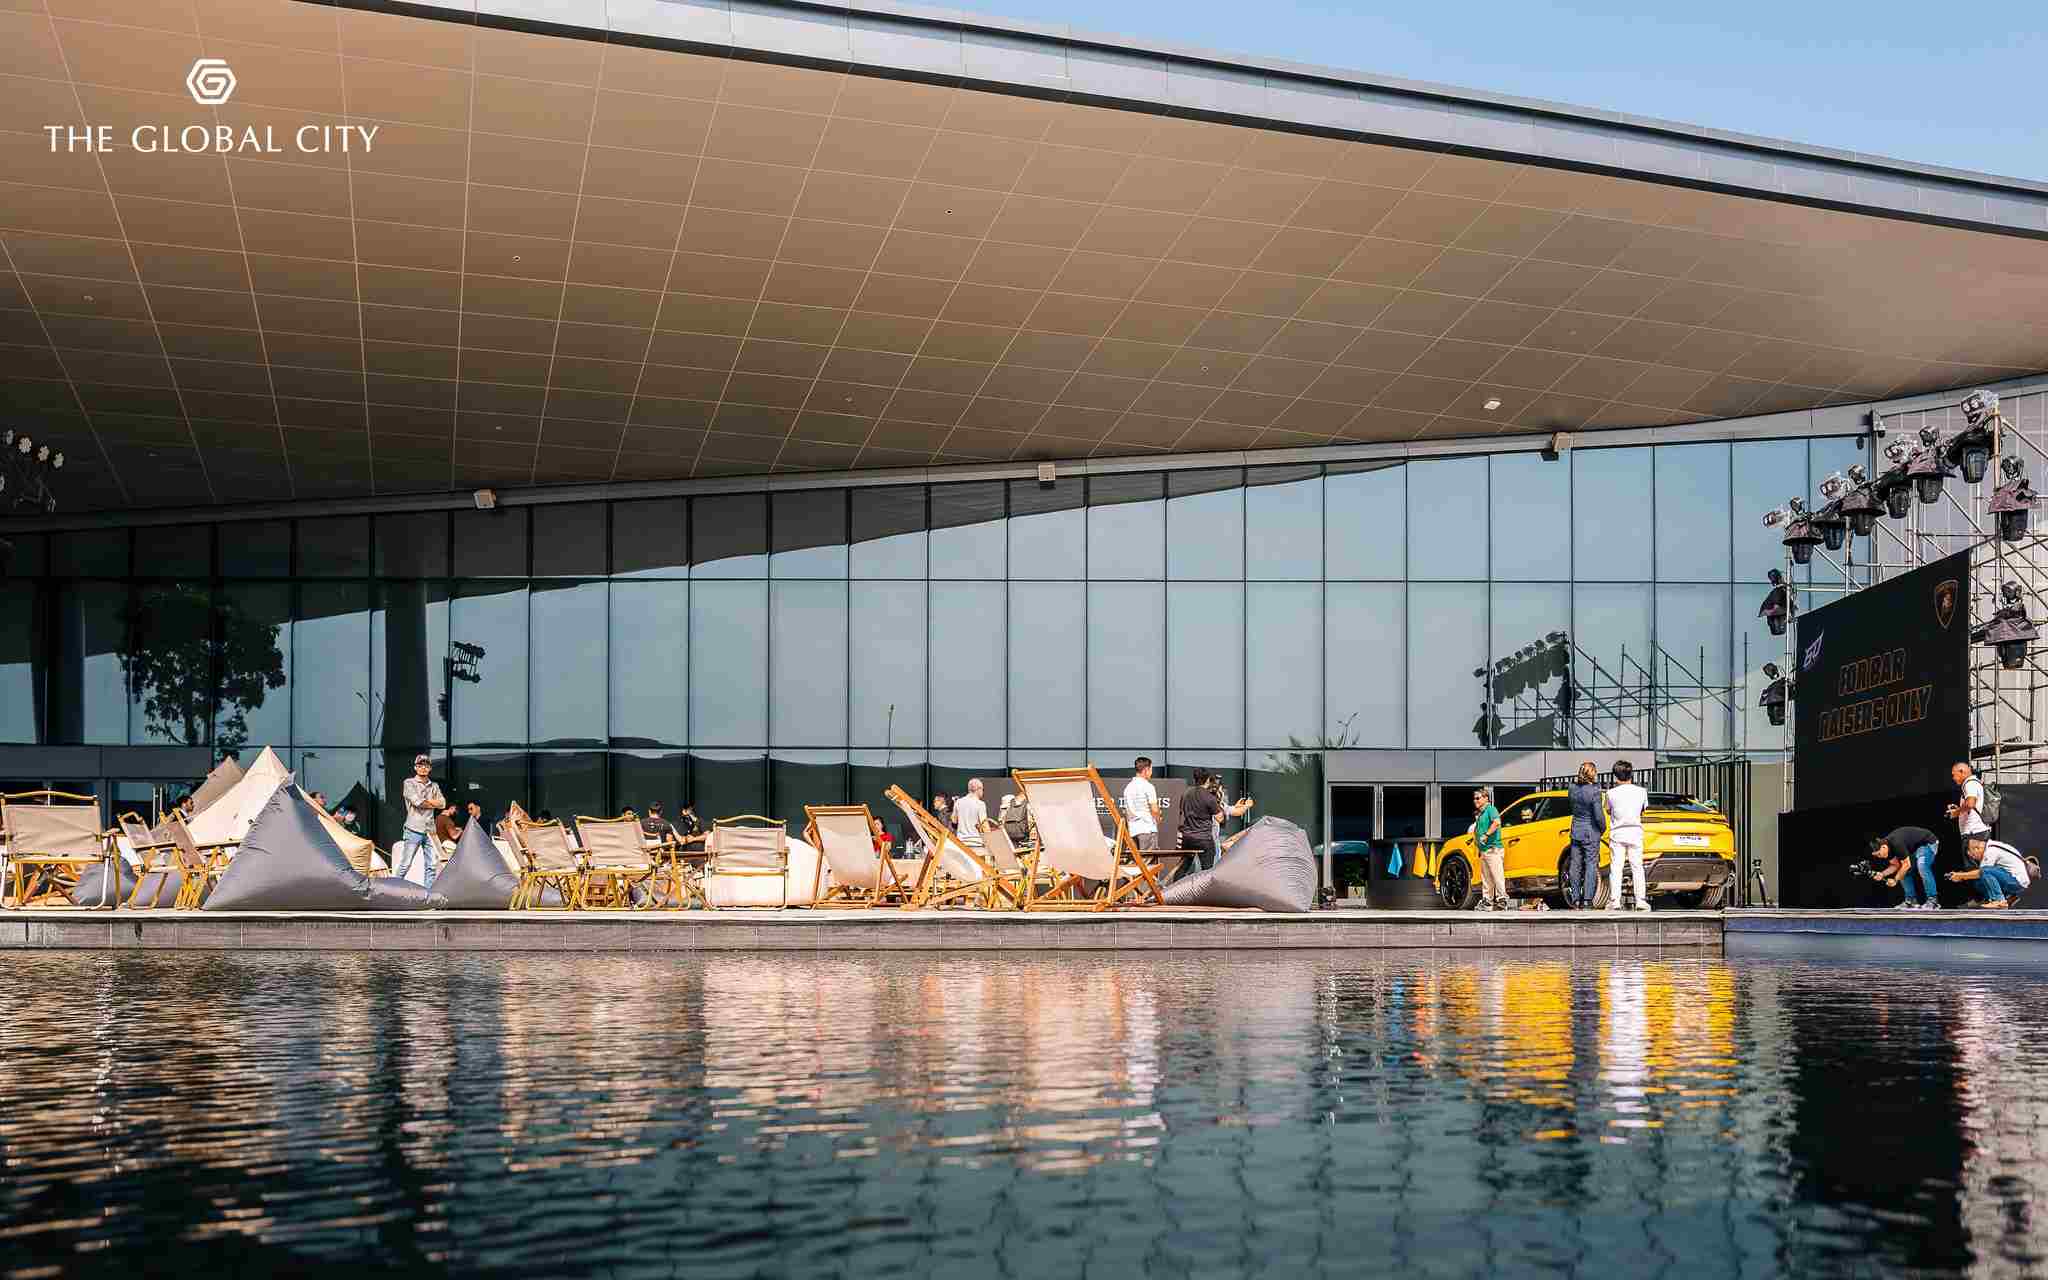 The Global City: Các doanh nhân hội tụ bên dàn siêu xe Lamborghini ( sự kiện ra mắt ngày 15/3 )